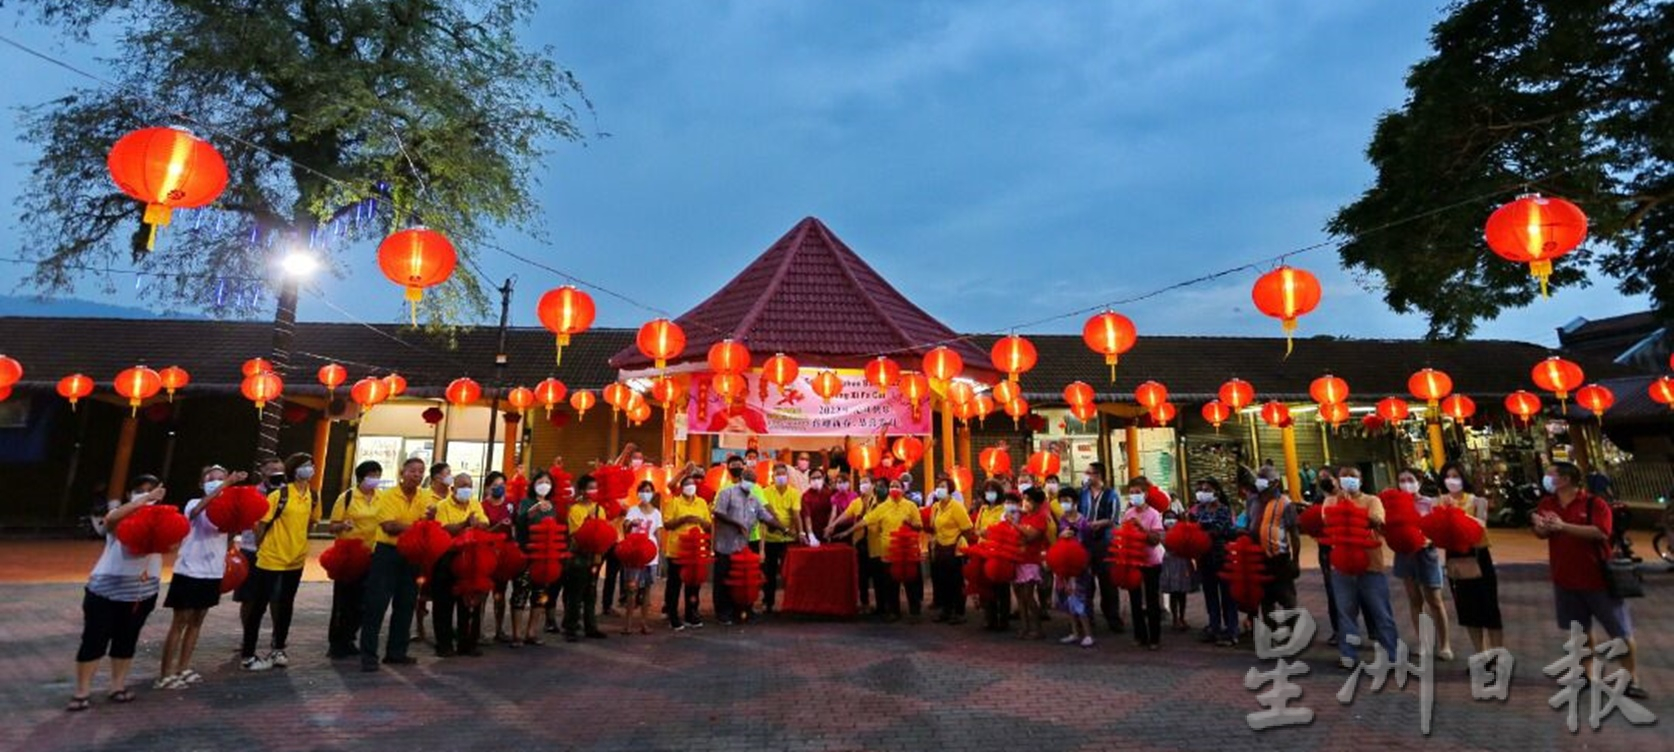 霹／保阁亚三社区公园挂200个灯笼新春气氛浓